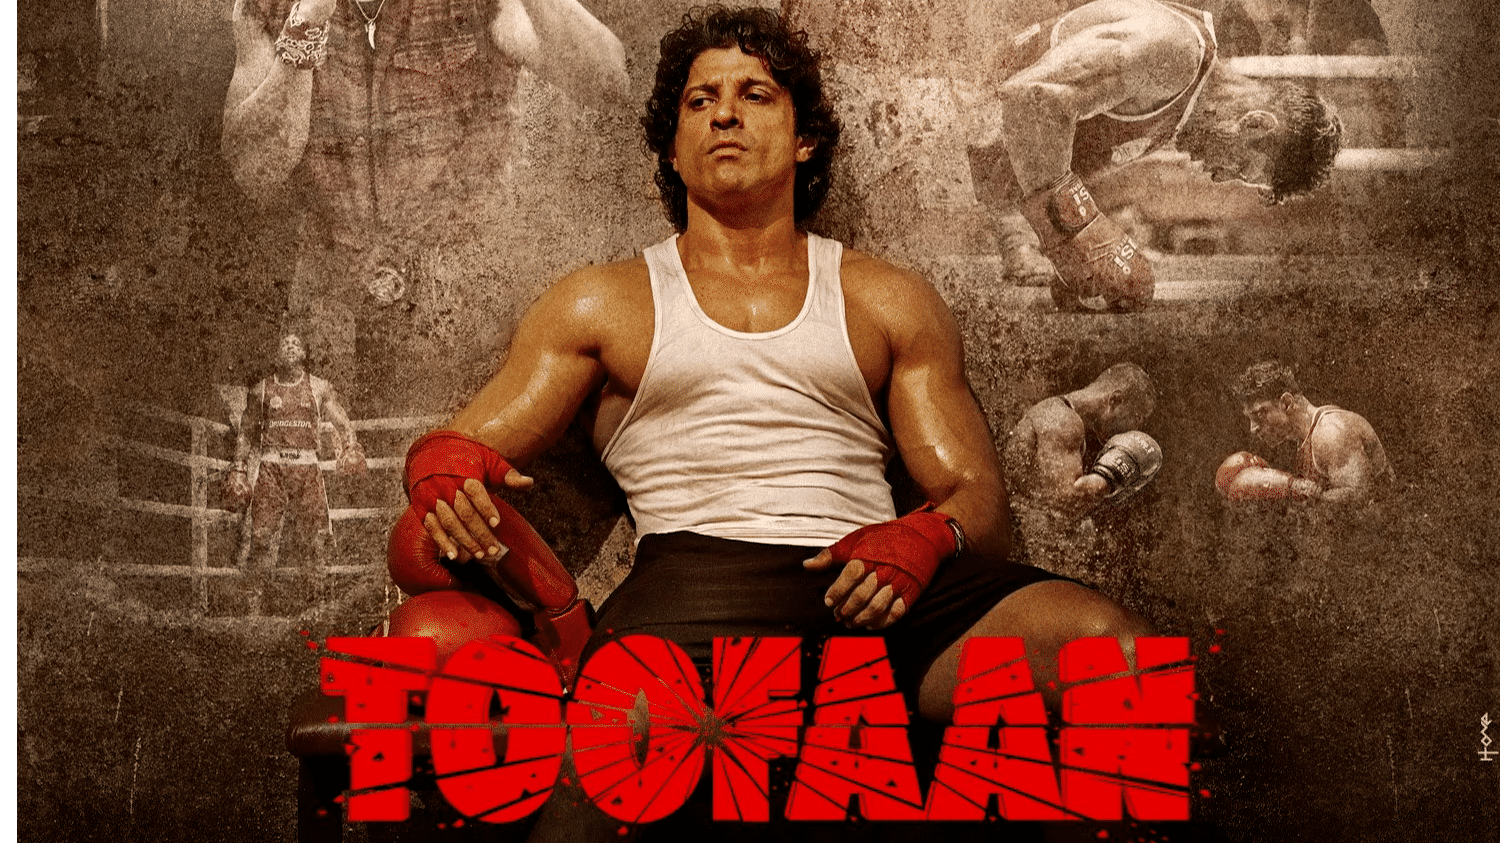 Farhan Akhtar packs a punch in ‘Toofan’ trailer. Watch